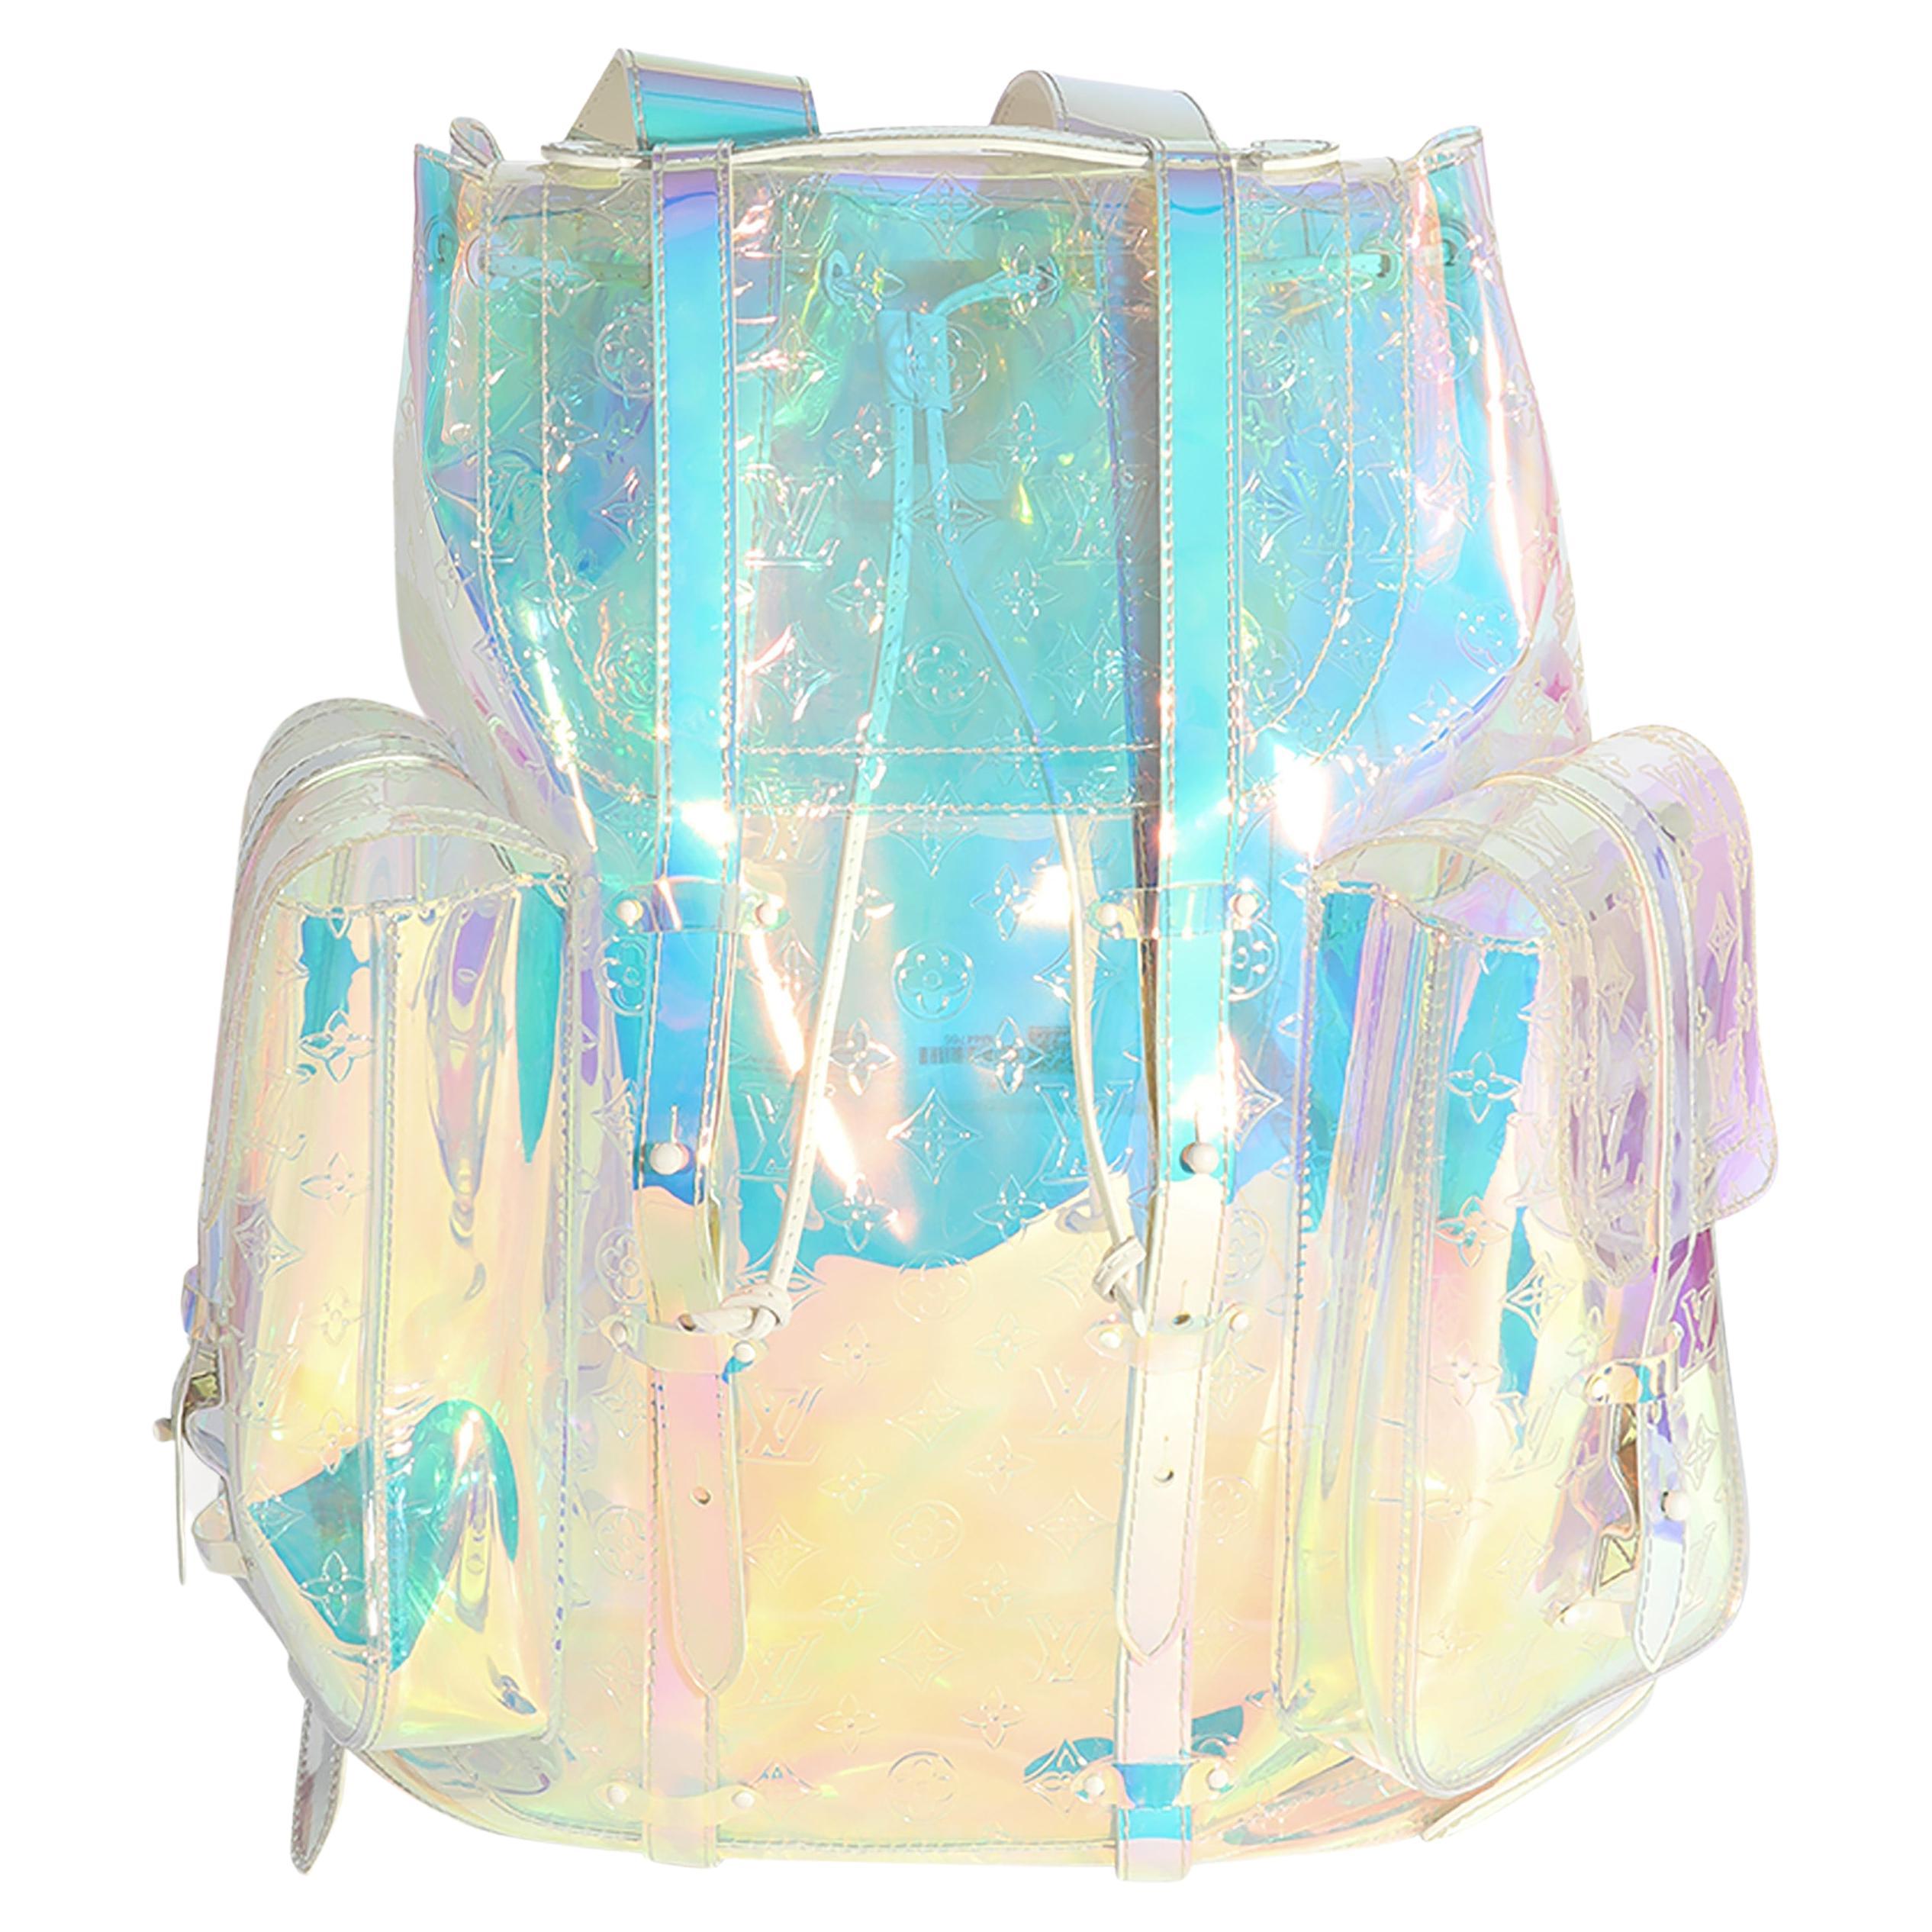 Prism Backpack - 8 For Sale on 1stDibs